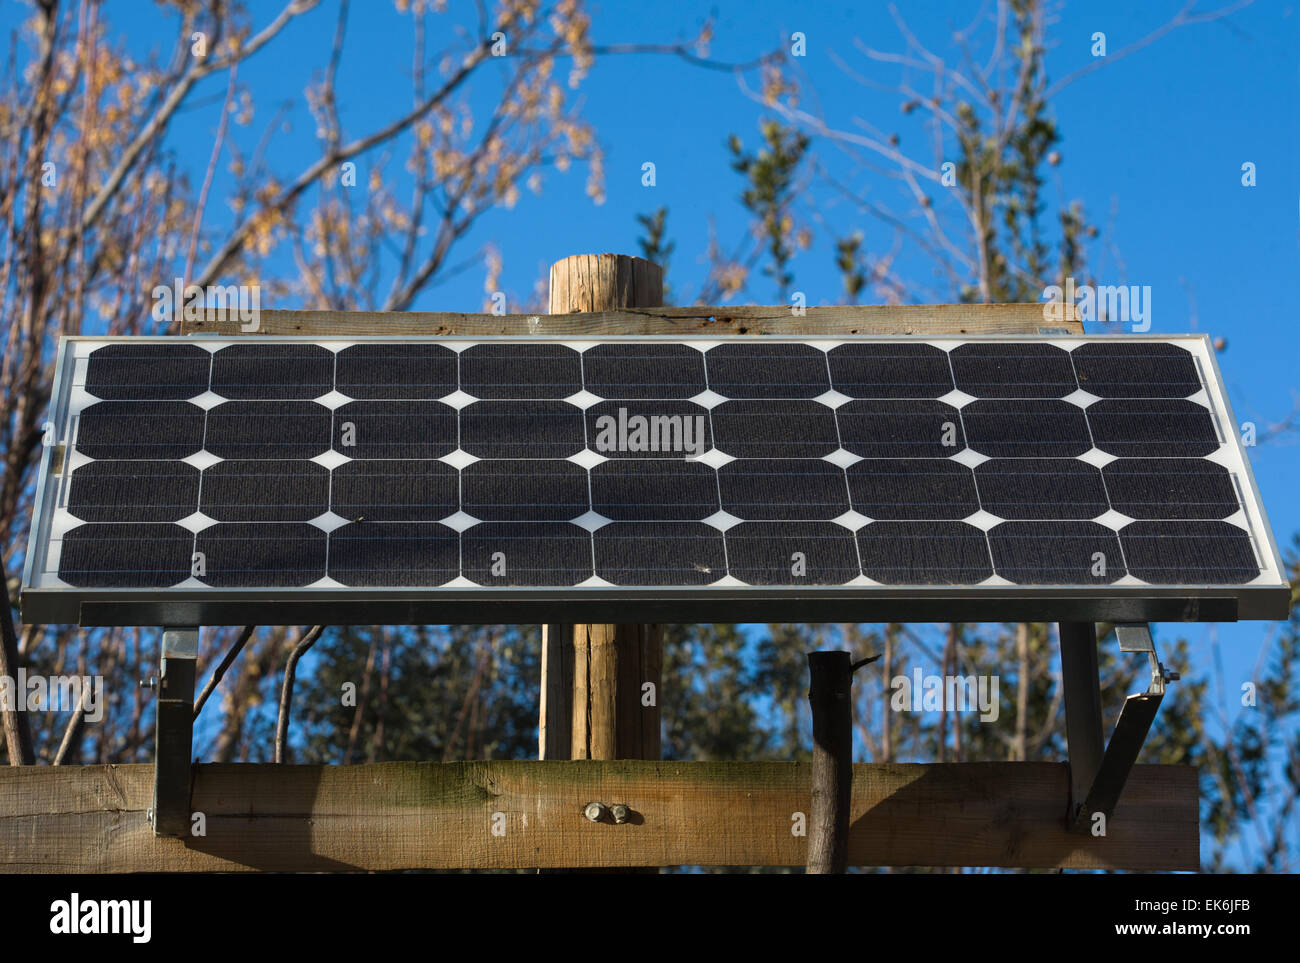 Diese Solar-Panel ist ein Stand-alone-Photovoltaik-Anlage oder elektrische Energiesysteme energetisiert durch Photovoltaik-panels, die eine Stockfoto